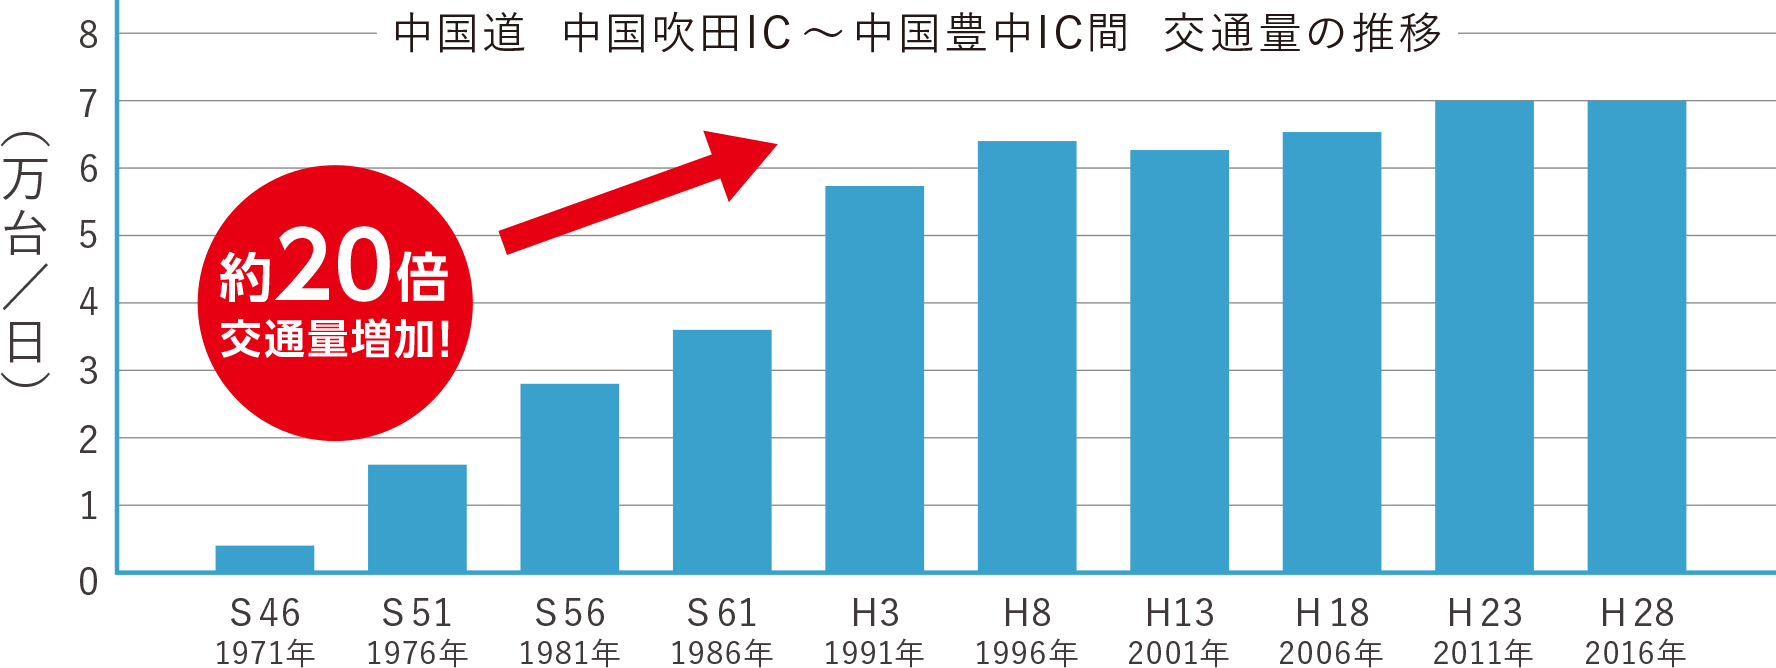 中国道交通量の推移グラフ